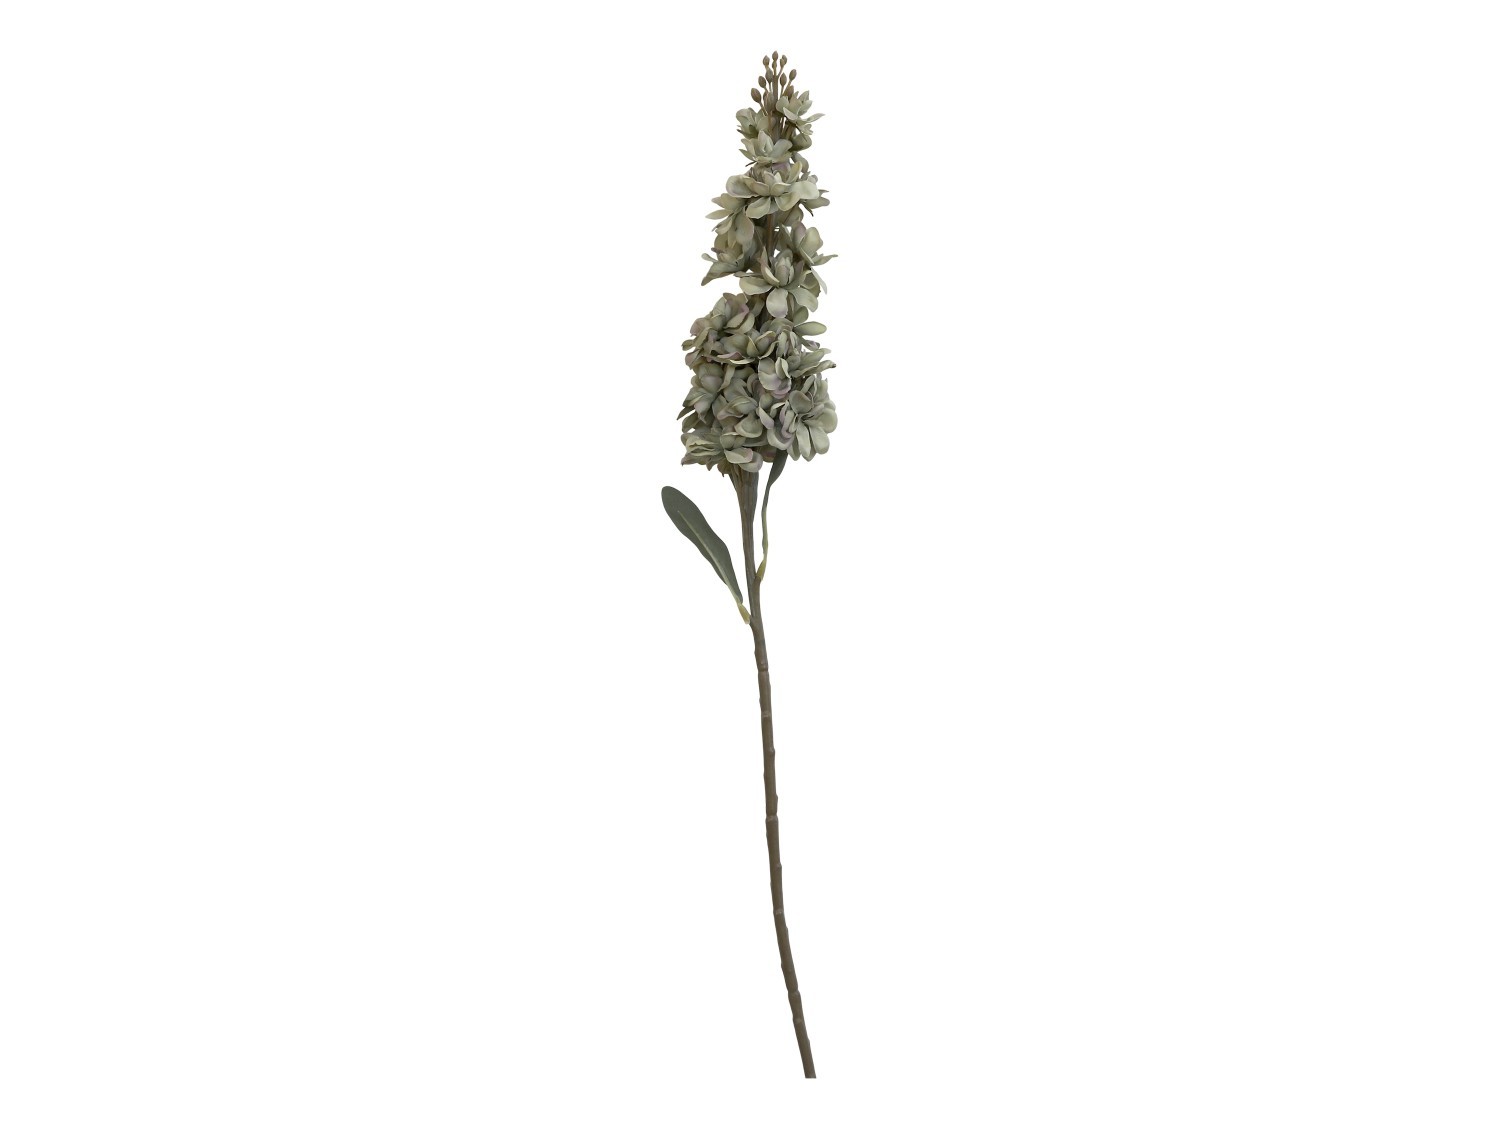 Dekorace umělá zelená květina Delphinium green - 80 cm Chic Antique